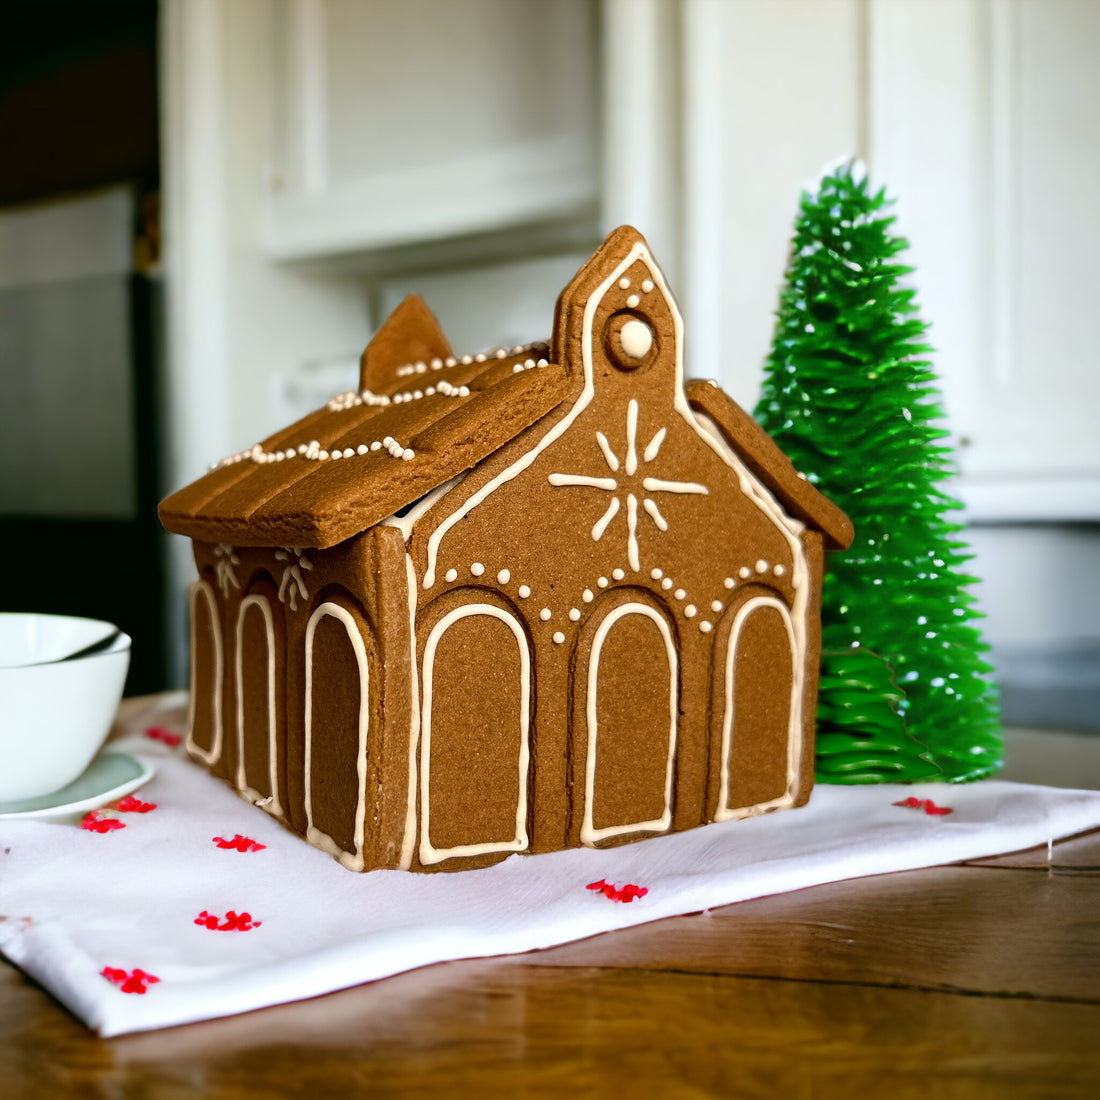 Non-spread Christmas gingerbread church recipe